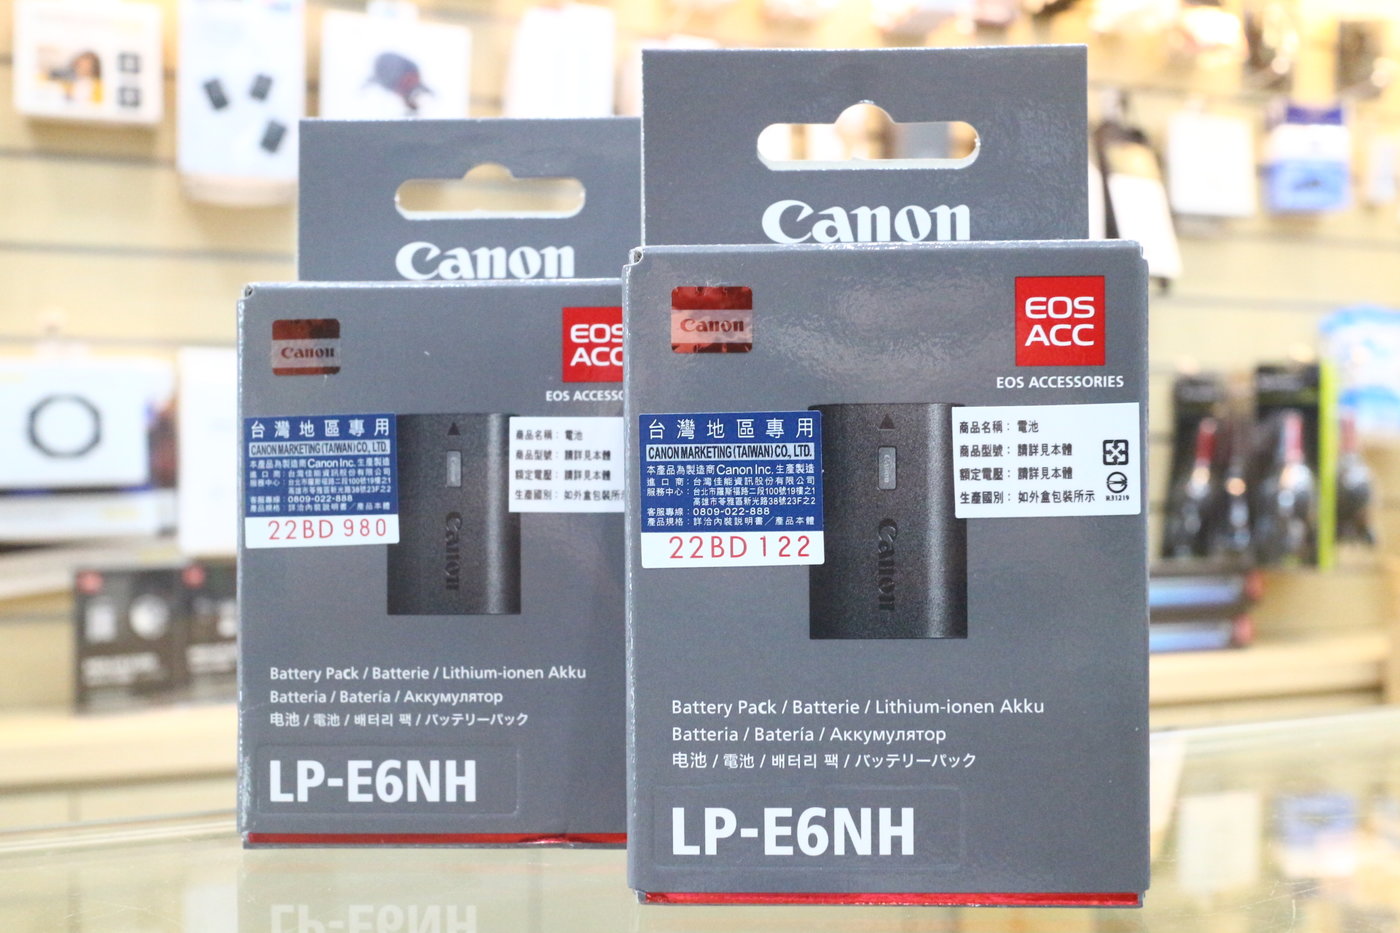 日產旗艦】現貨全新原廠公司貨盒裝新版Canon LP-E6NH LPE6NH 原廠電池